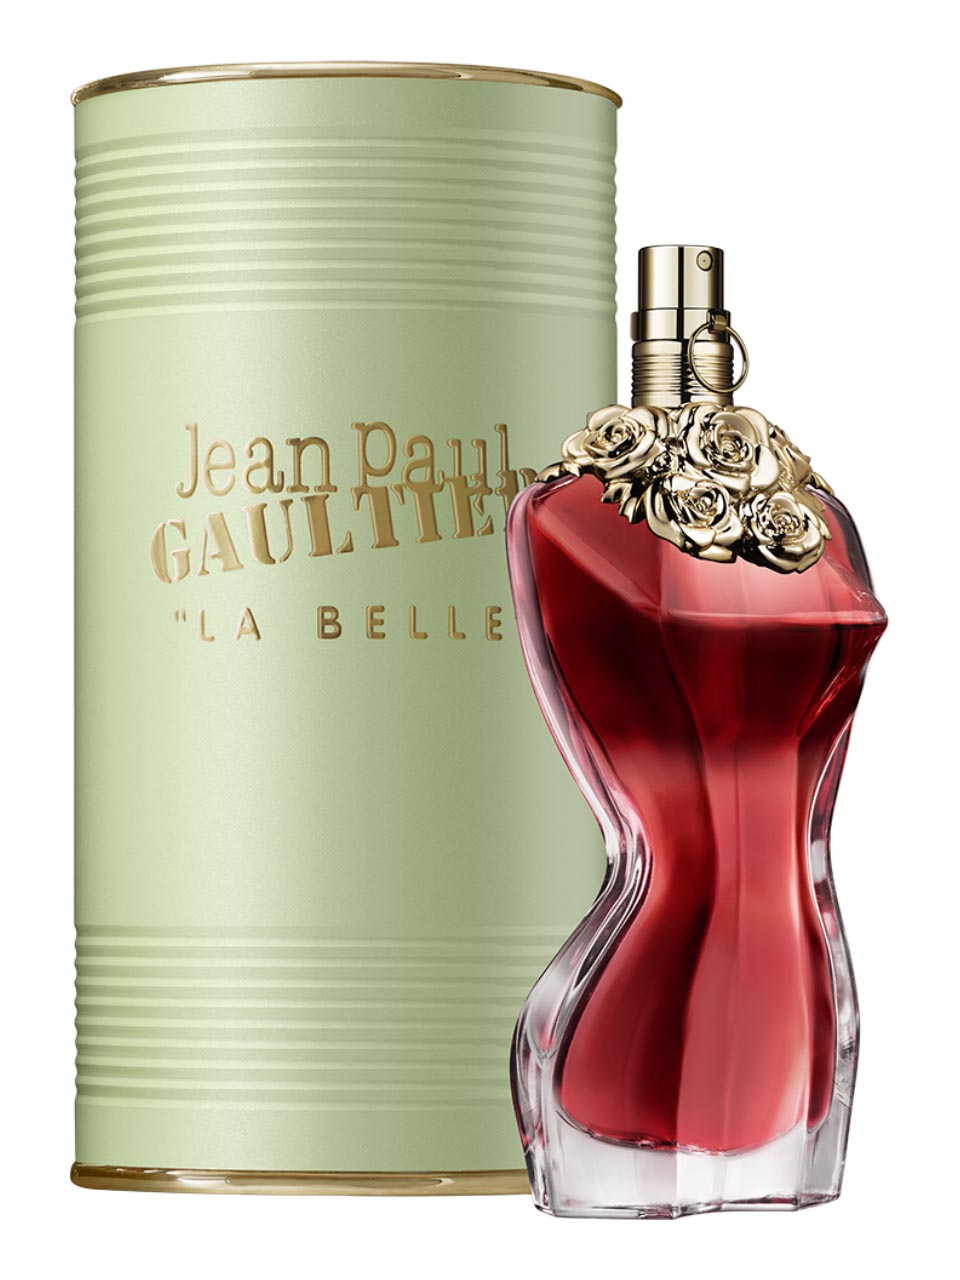 Jean Paul Gaultier Classique La Belle Eau de Parfum 100 ml null - onesize - 1